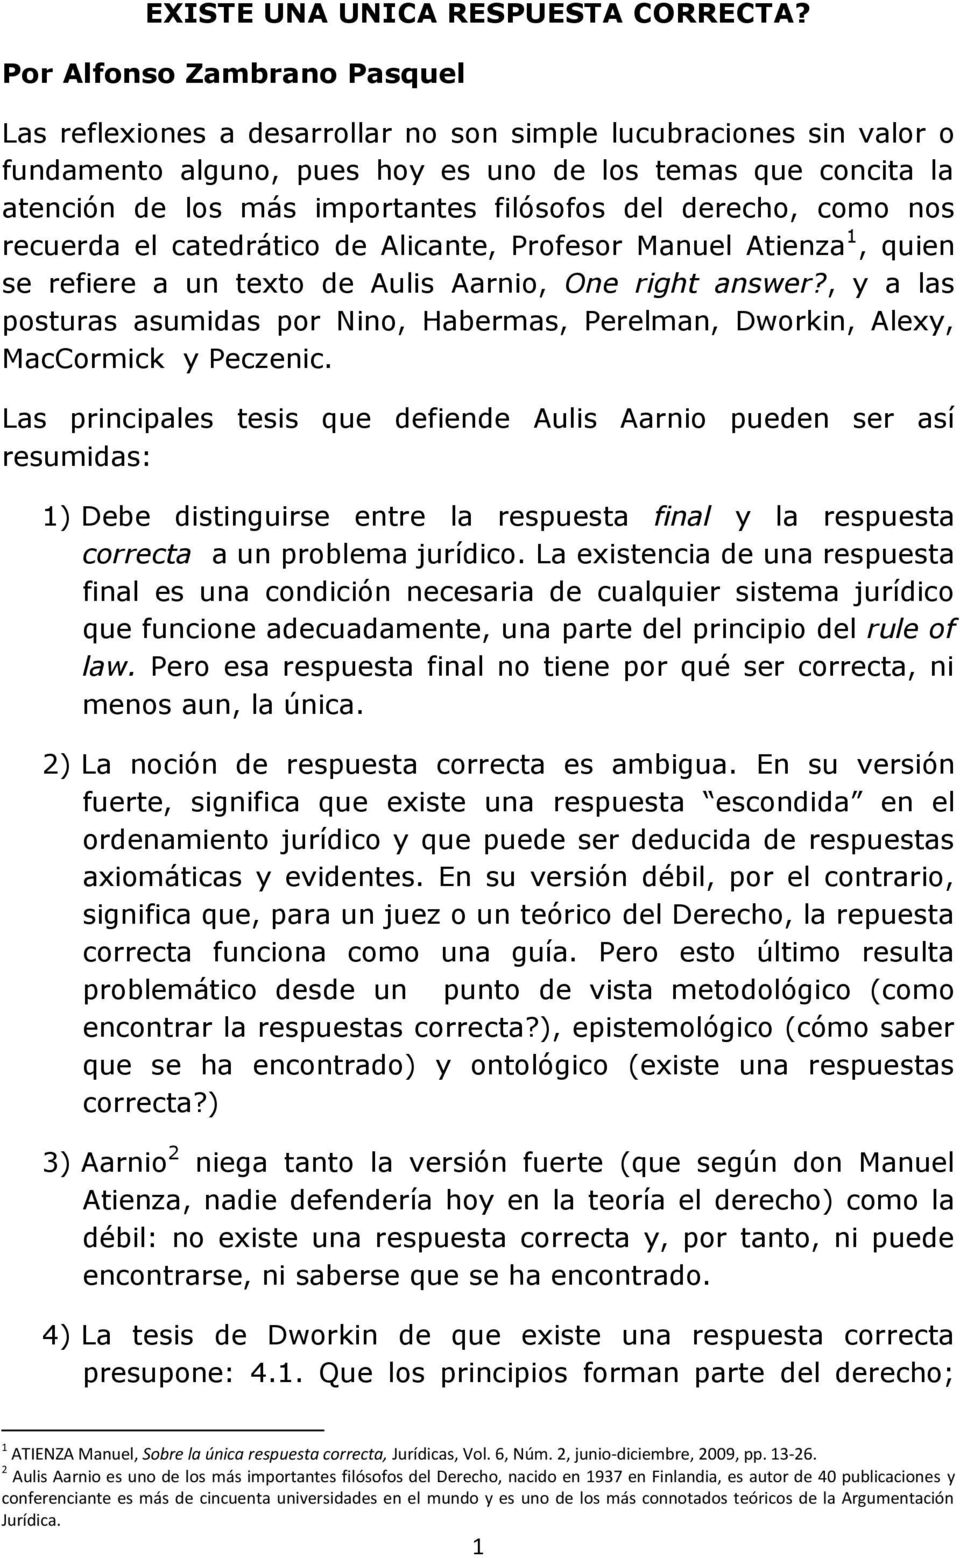 filósofos del derecho, como nos recuerda el catedrático de Alicante, Profesor Manuel Atienza 1, quien se refiere a un texto de Aulis Aarnio, One right answer?